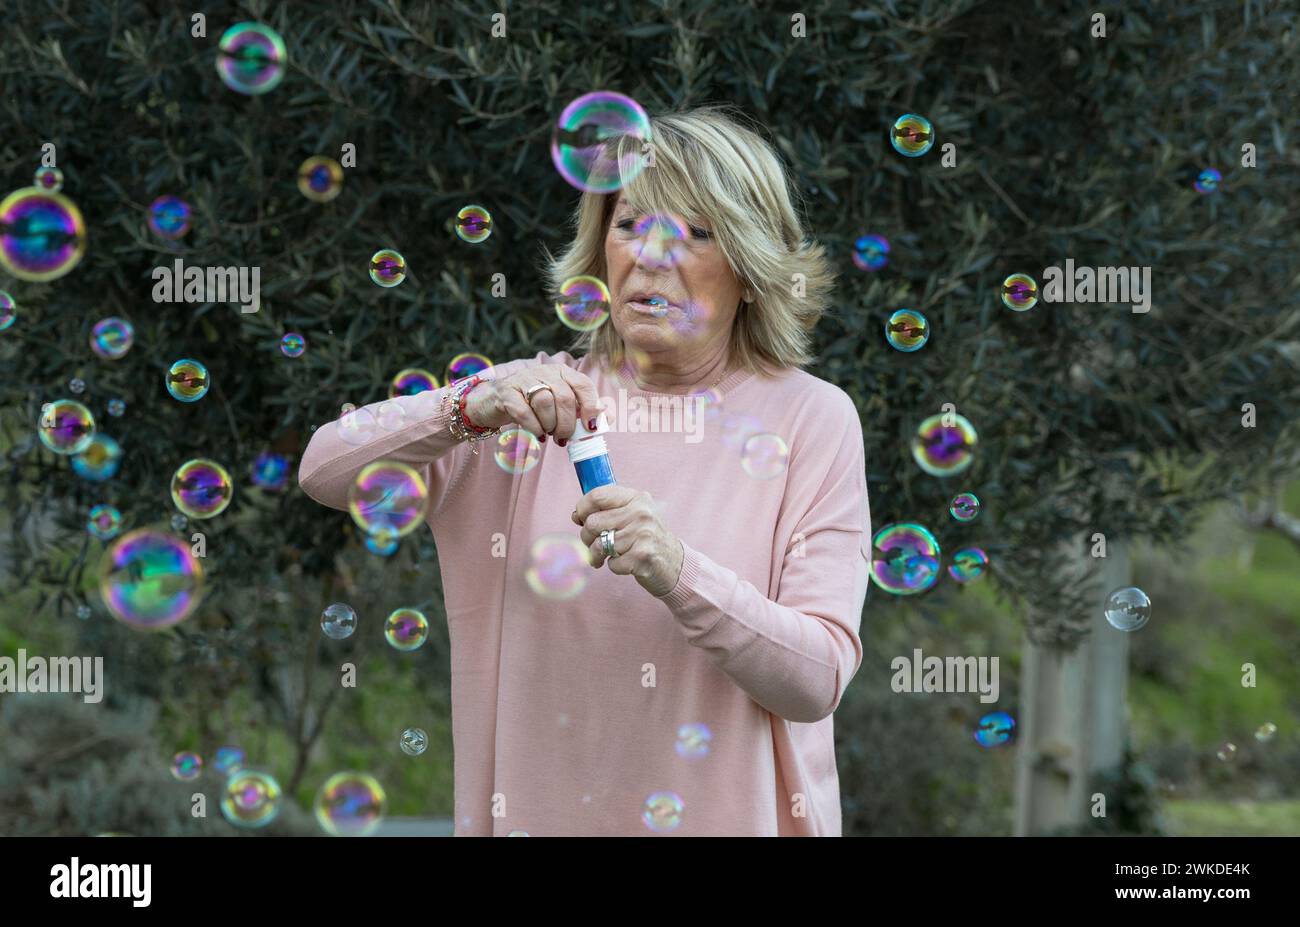 Una donna anziana con un maglione rosa crea gioiosamente bolle di sapone, catturando un momento di puro divertimento e giocosità durante una riunione femminile. Foto Stock